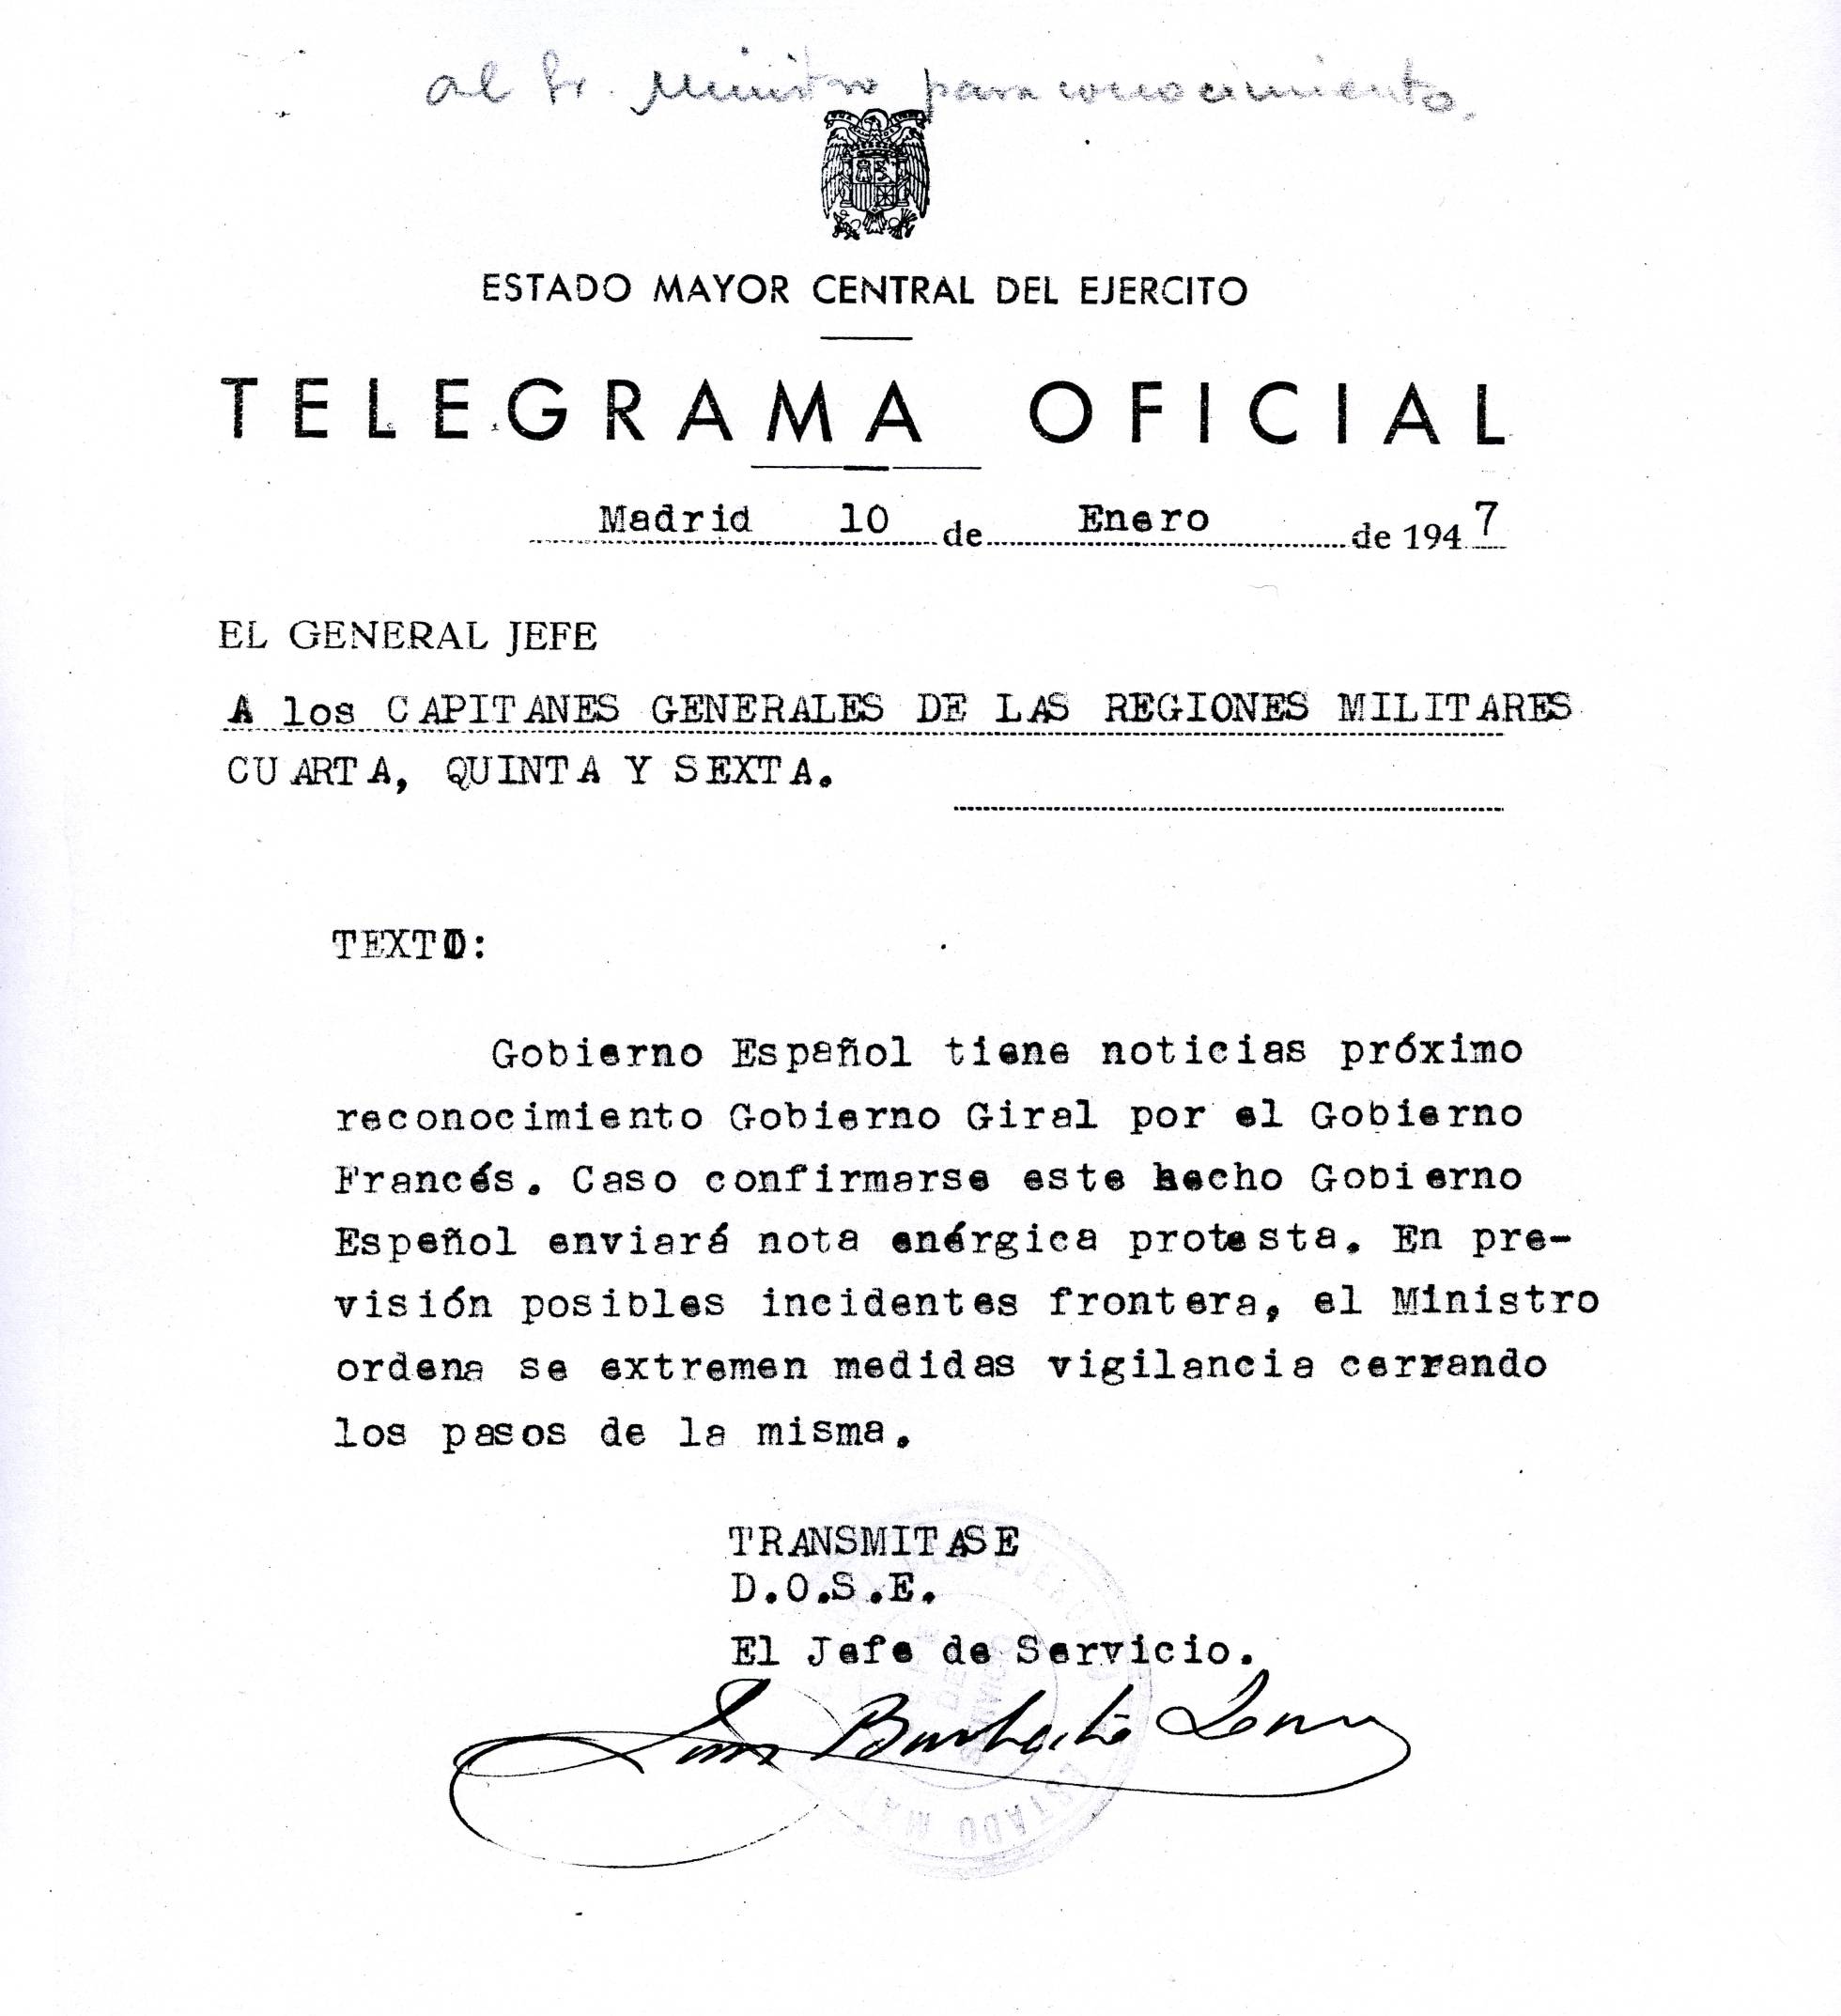 Defensa autoriza el acceso a documentos del Archivo de Ávila anteriores a 1968 1539960952_516966_1539961229_sumario_normal_recorte1